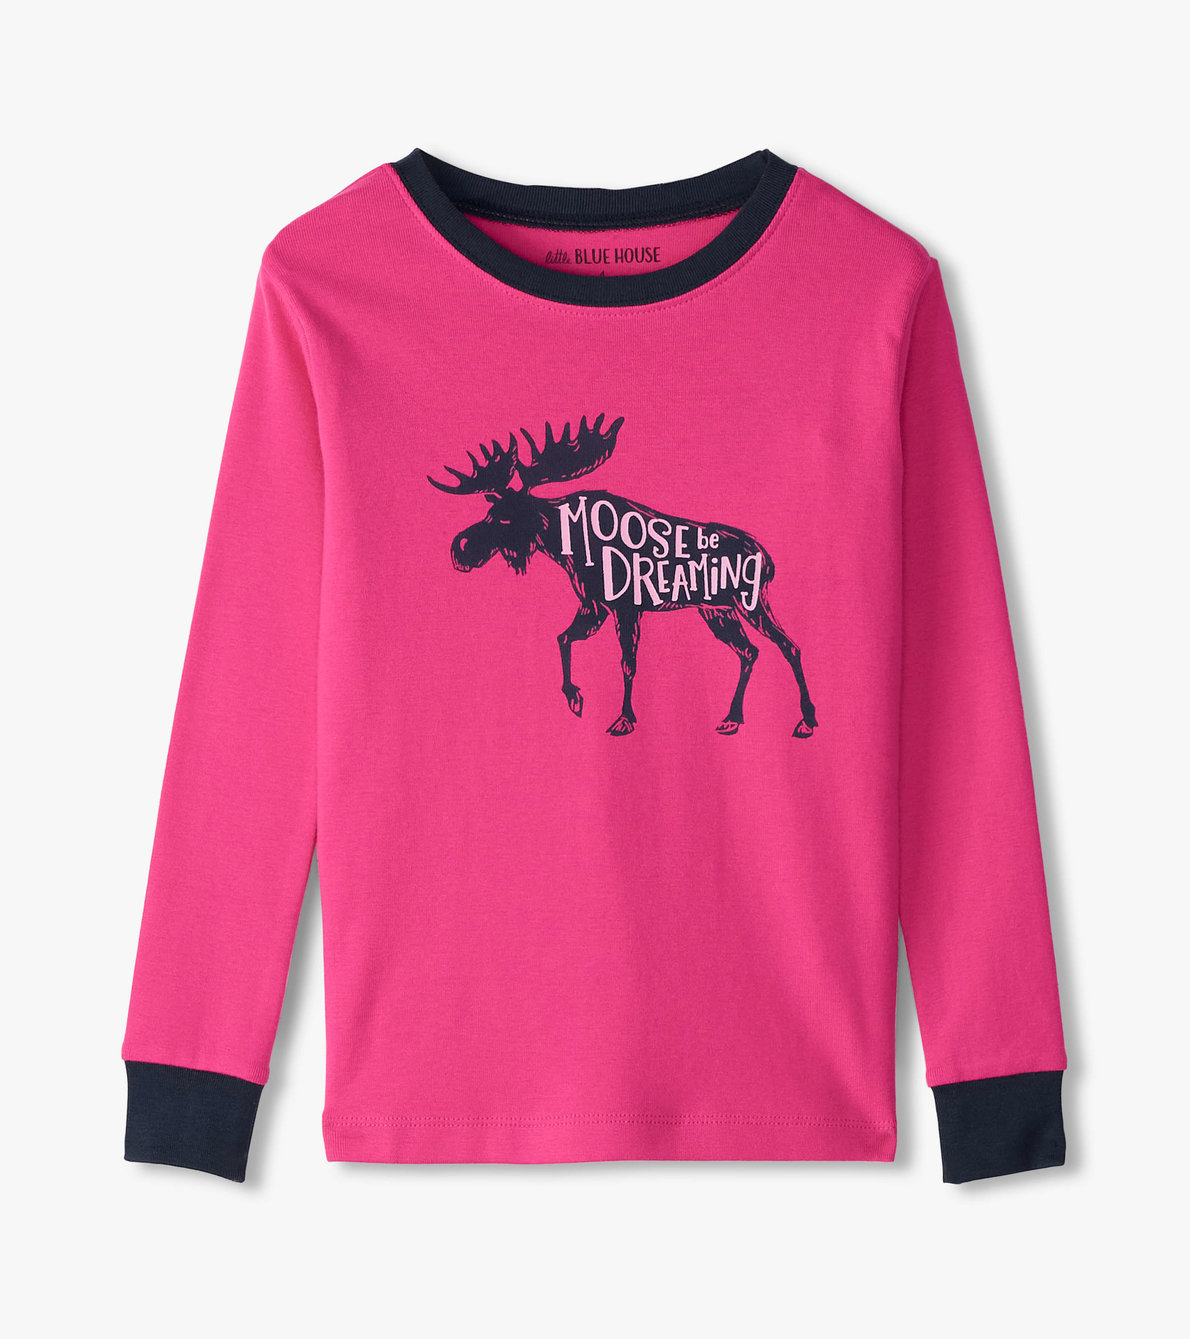 View larger image of Moose Be Dreaming Raspberry Moose Kids Pajama Set